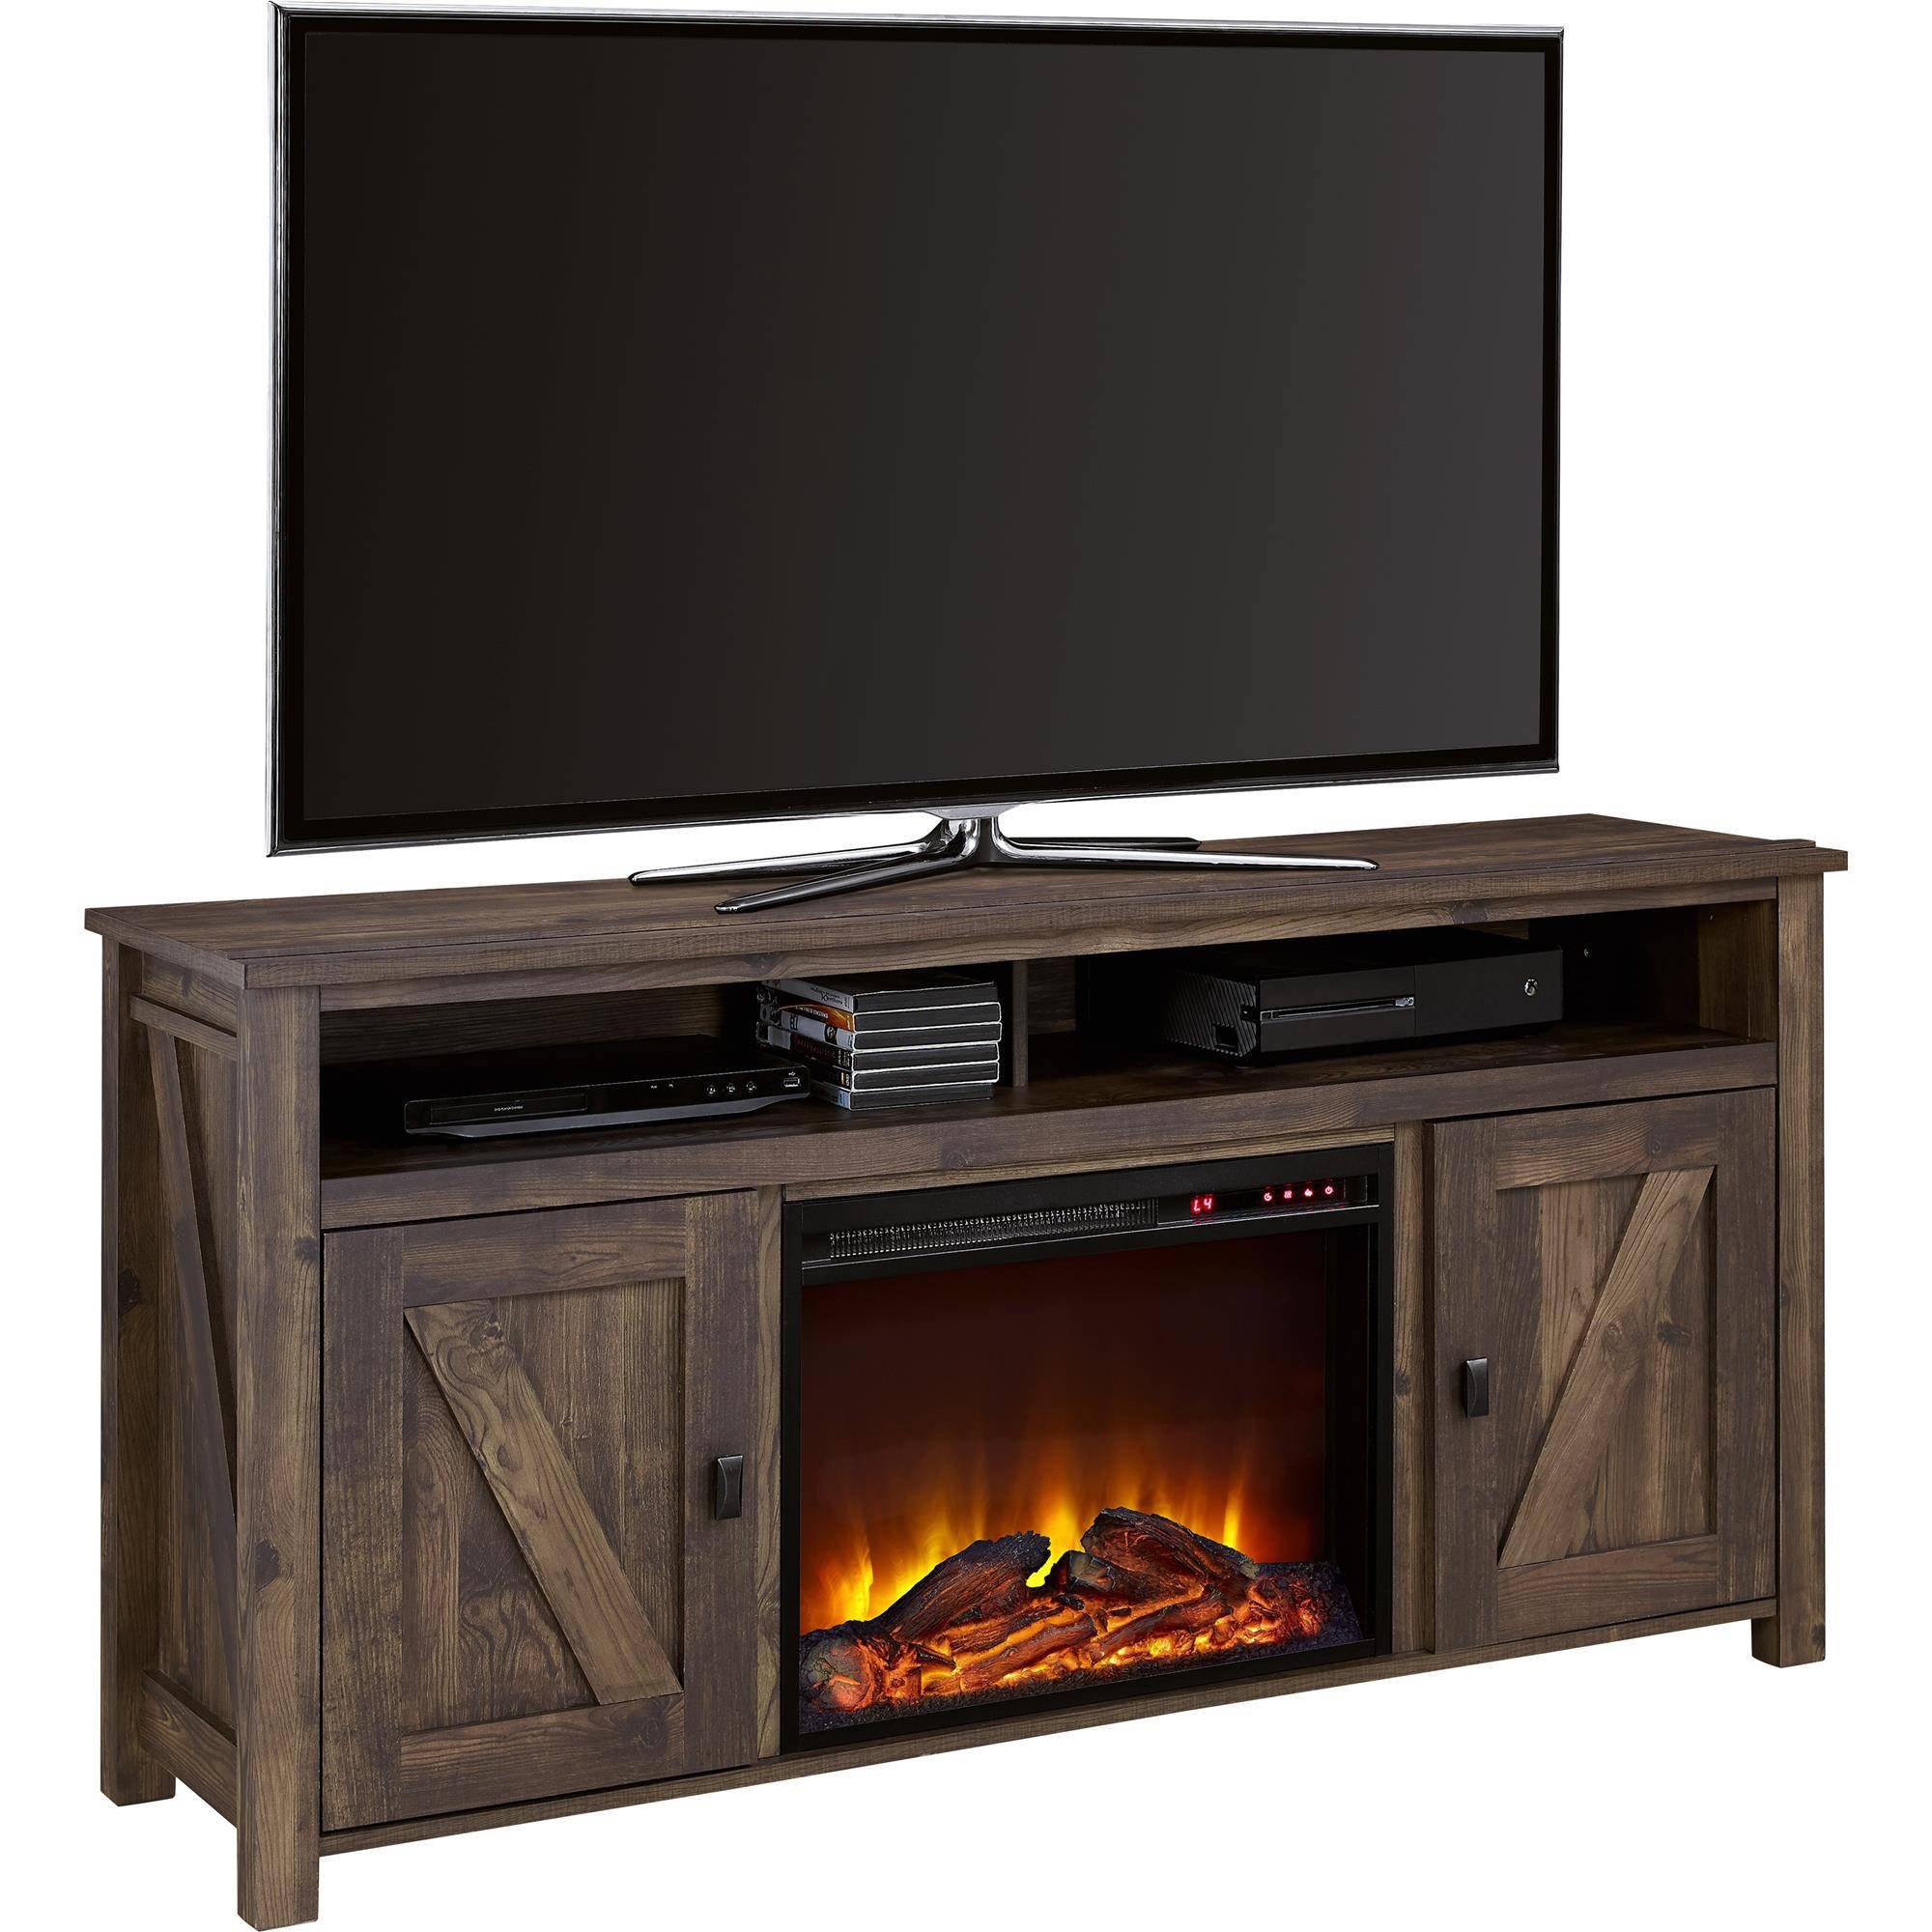 Best ideas about Walmart Fireplace Tv Stands
. Save or Pin Electric Fireplace TV Stands Walmart Now.